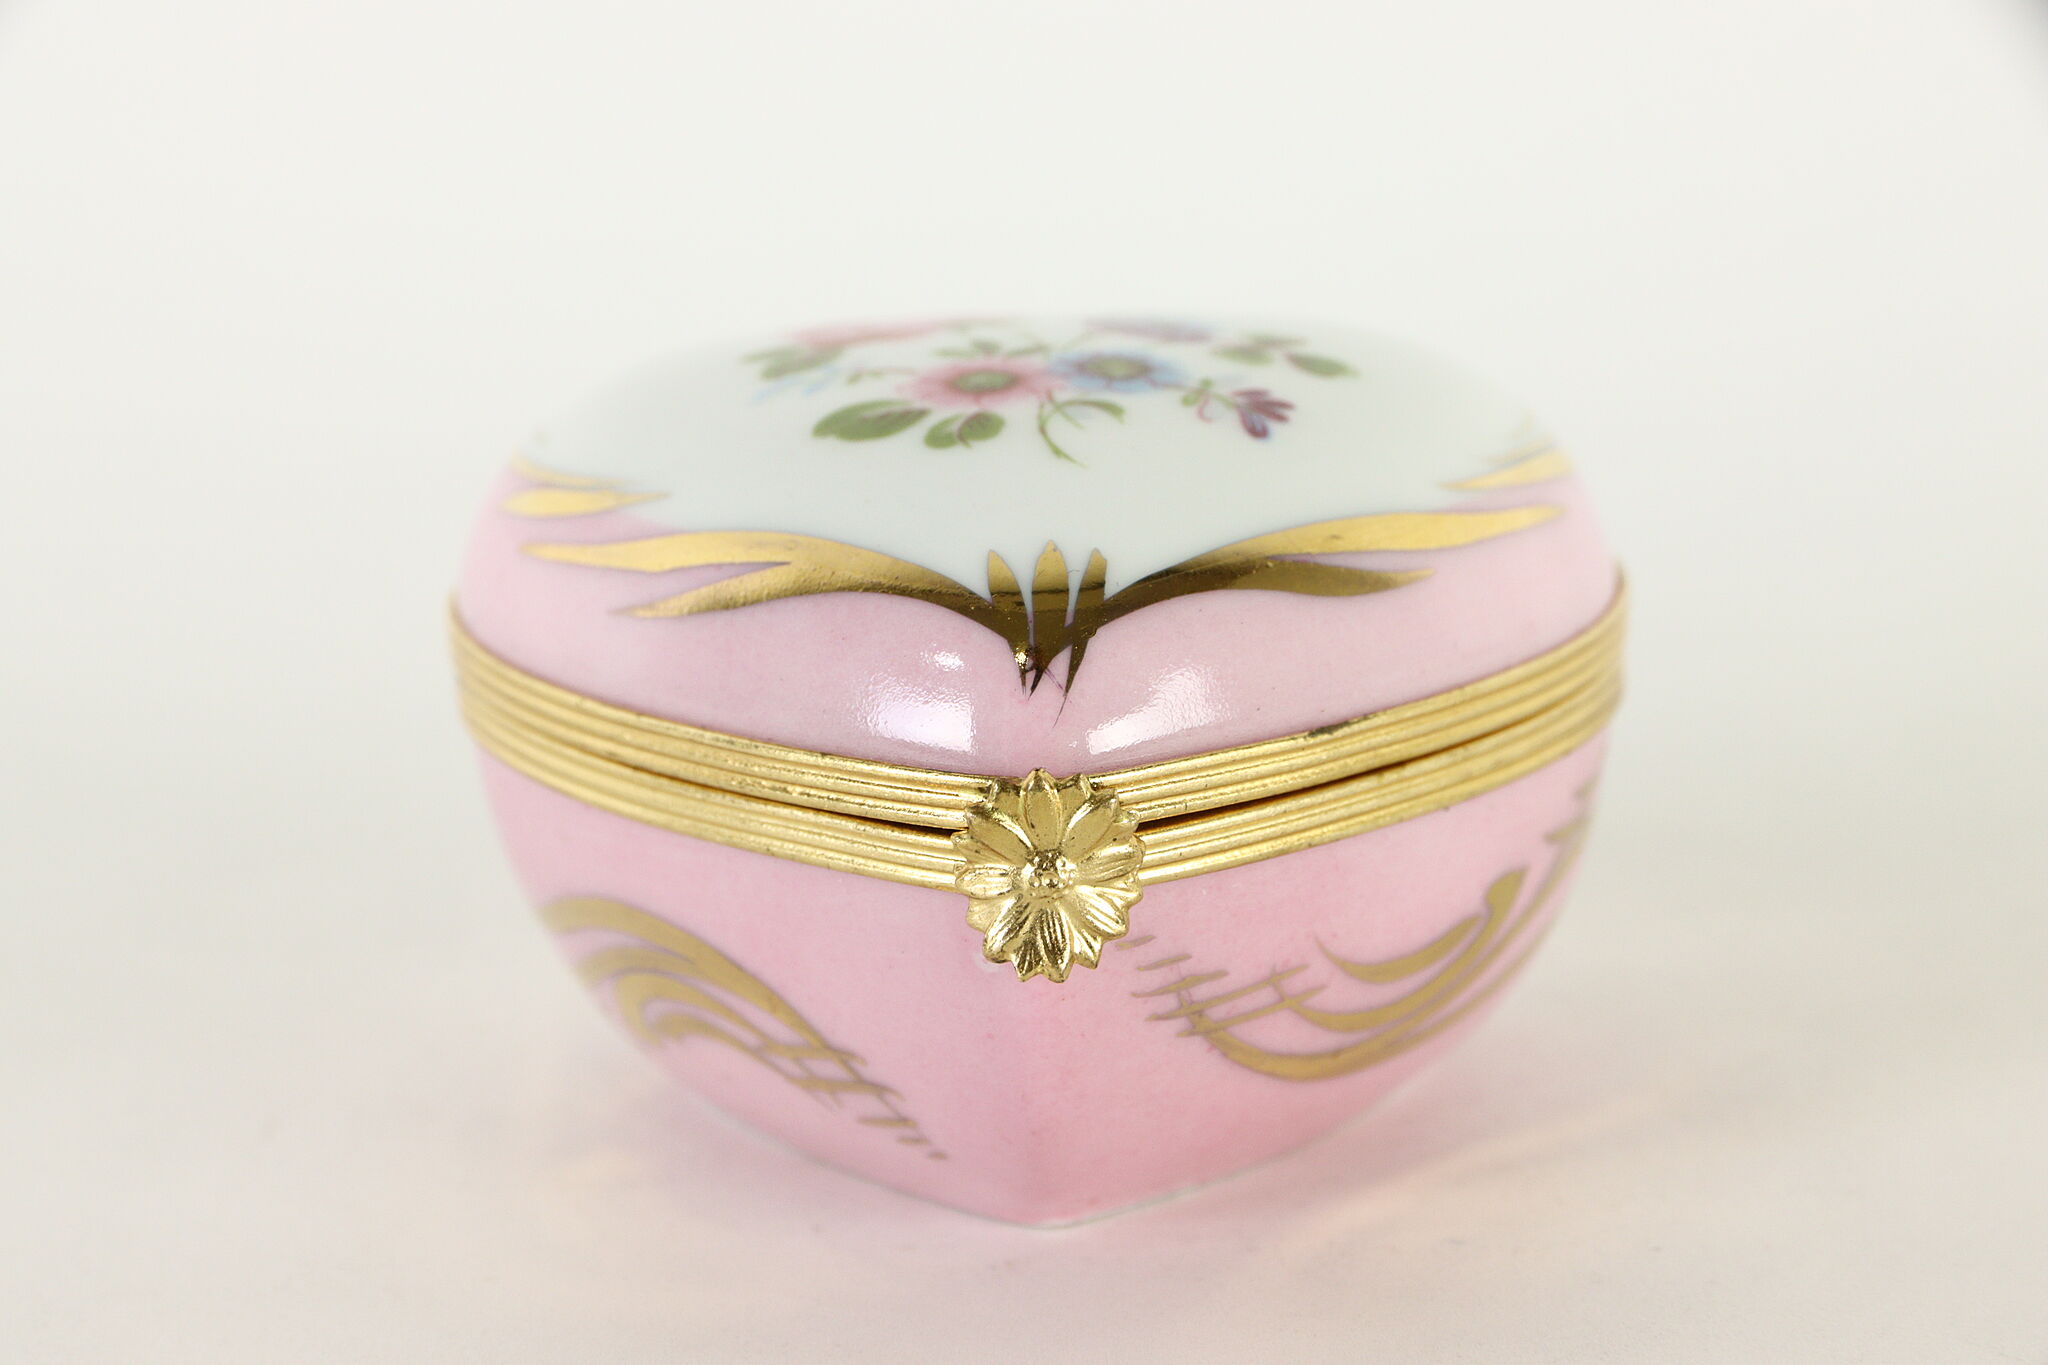 Porcelain Trinket or Keepsake Box, Heart Shape, Limoges France